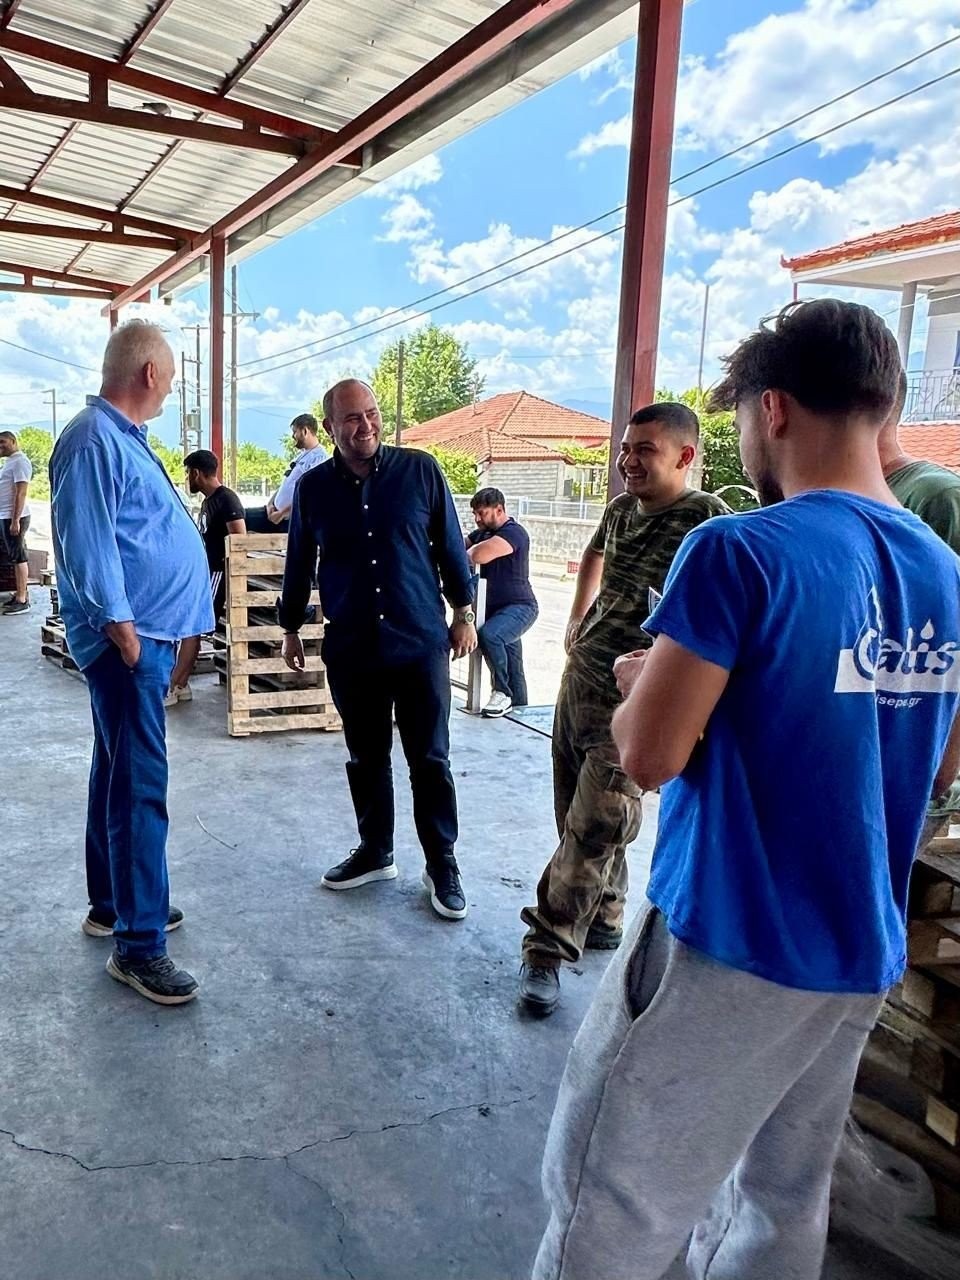 Λάκης Βασιλειάδης: Επίσκεψη στους παραγωγούς που επλήγησαν από τις χαλαζοπτώσεις και βροχοπτώσεις σε κοινότητες της Αλμωπίας